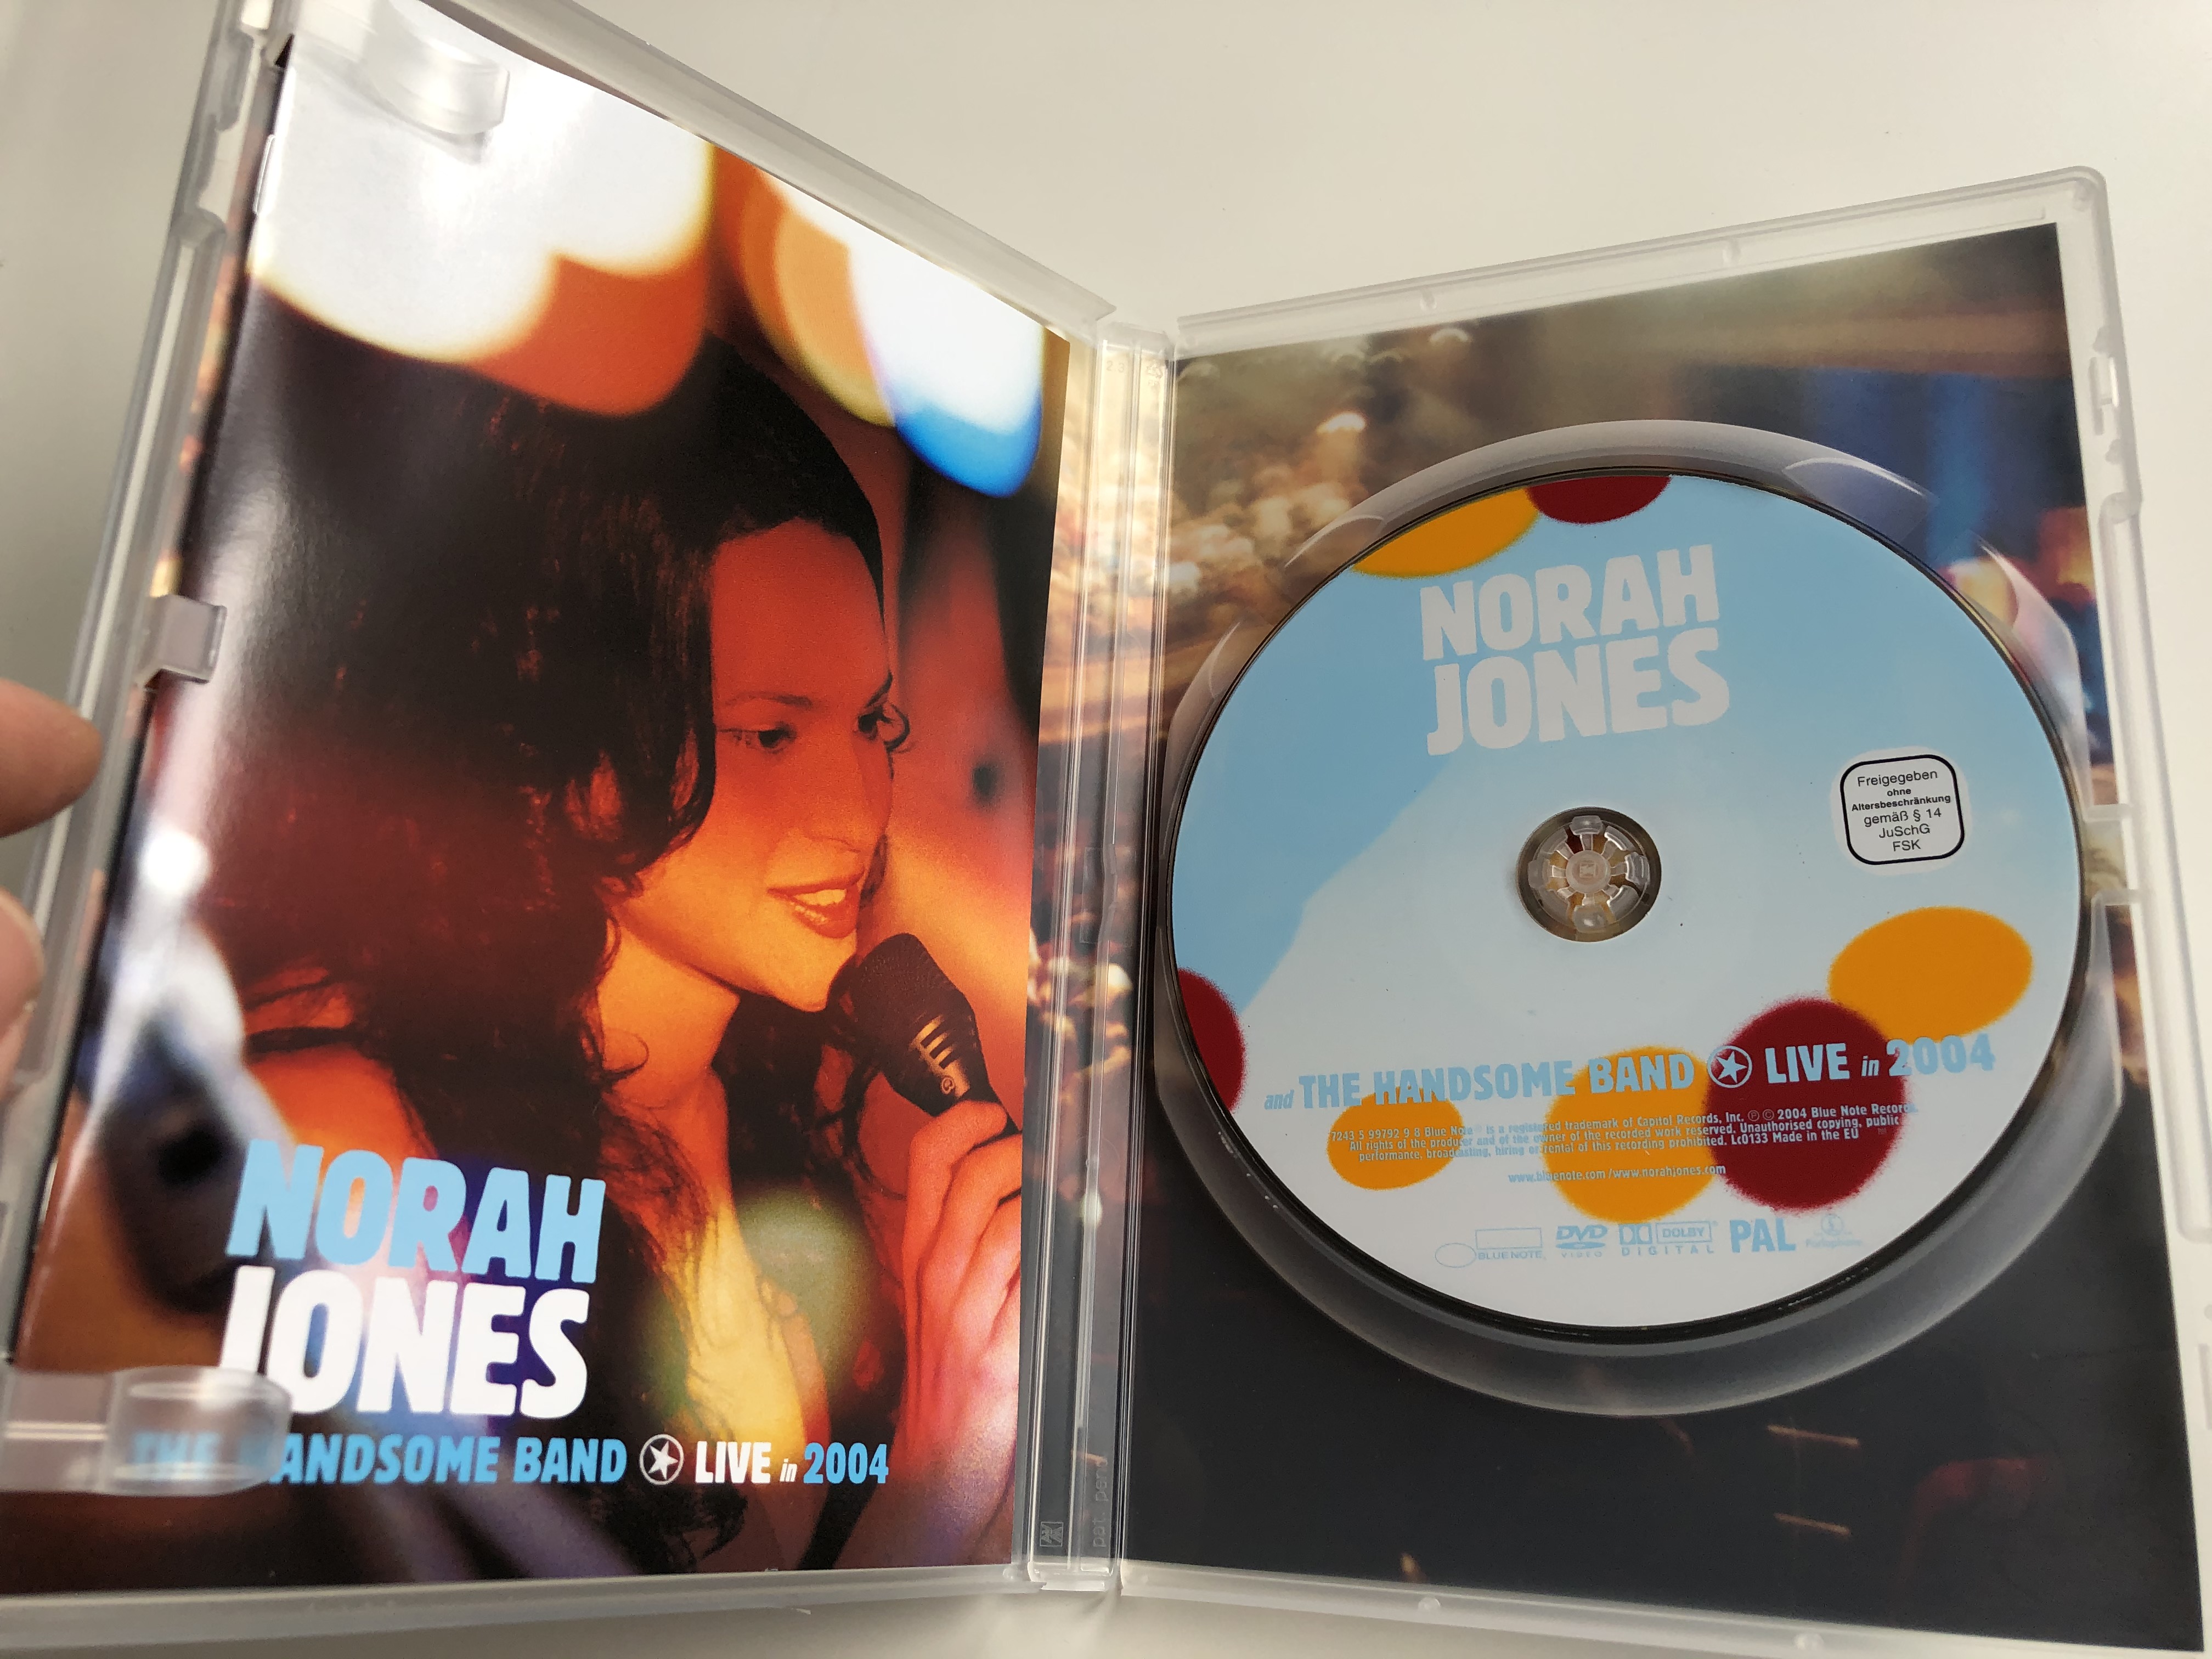 Norah Jones & the handsome band LIVE DVD 2004 / Daru Oda, Adam Levy, Andrew Borger, Robbie